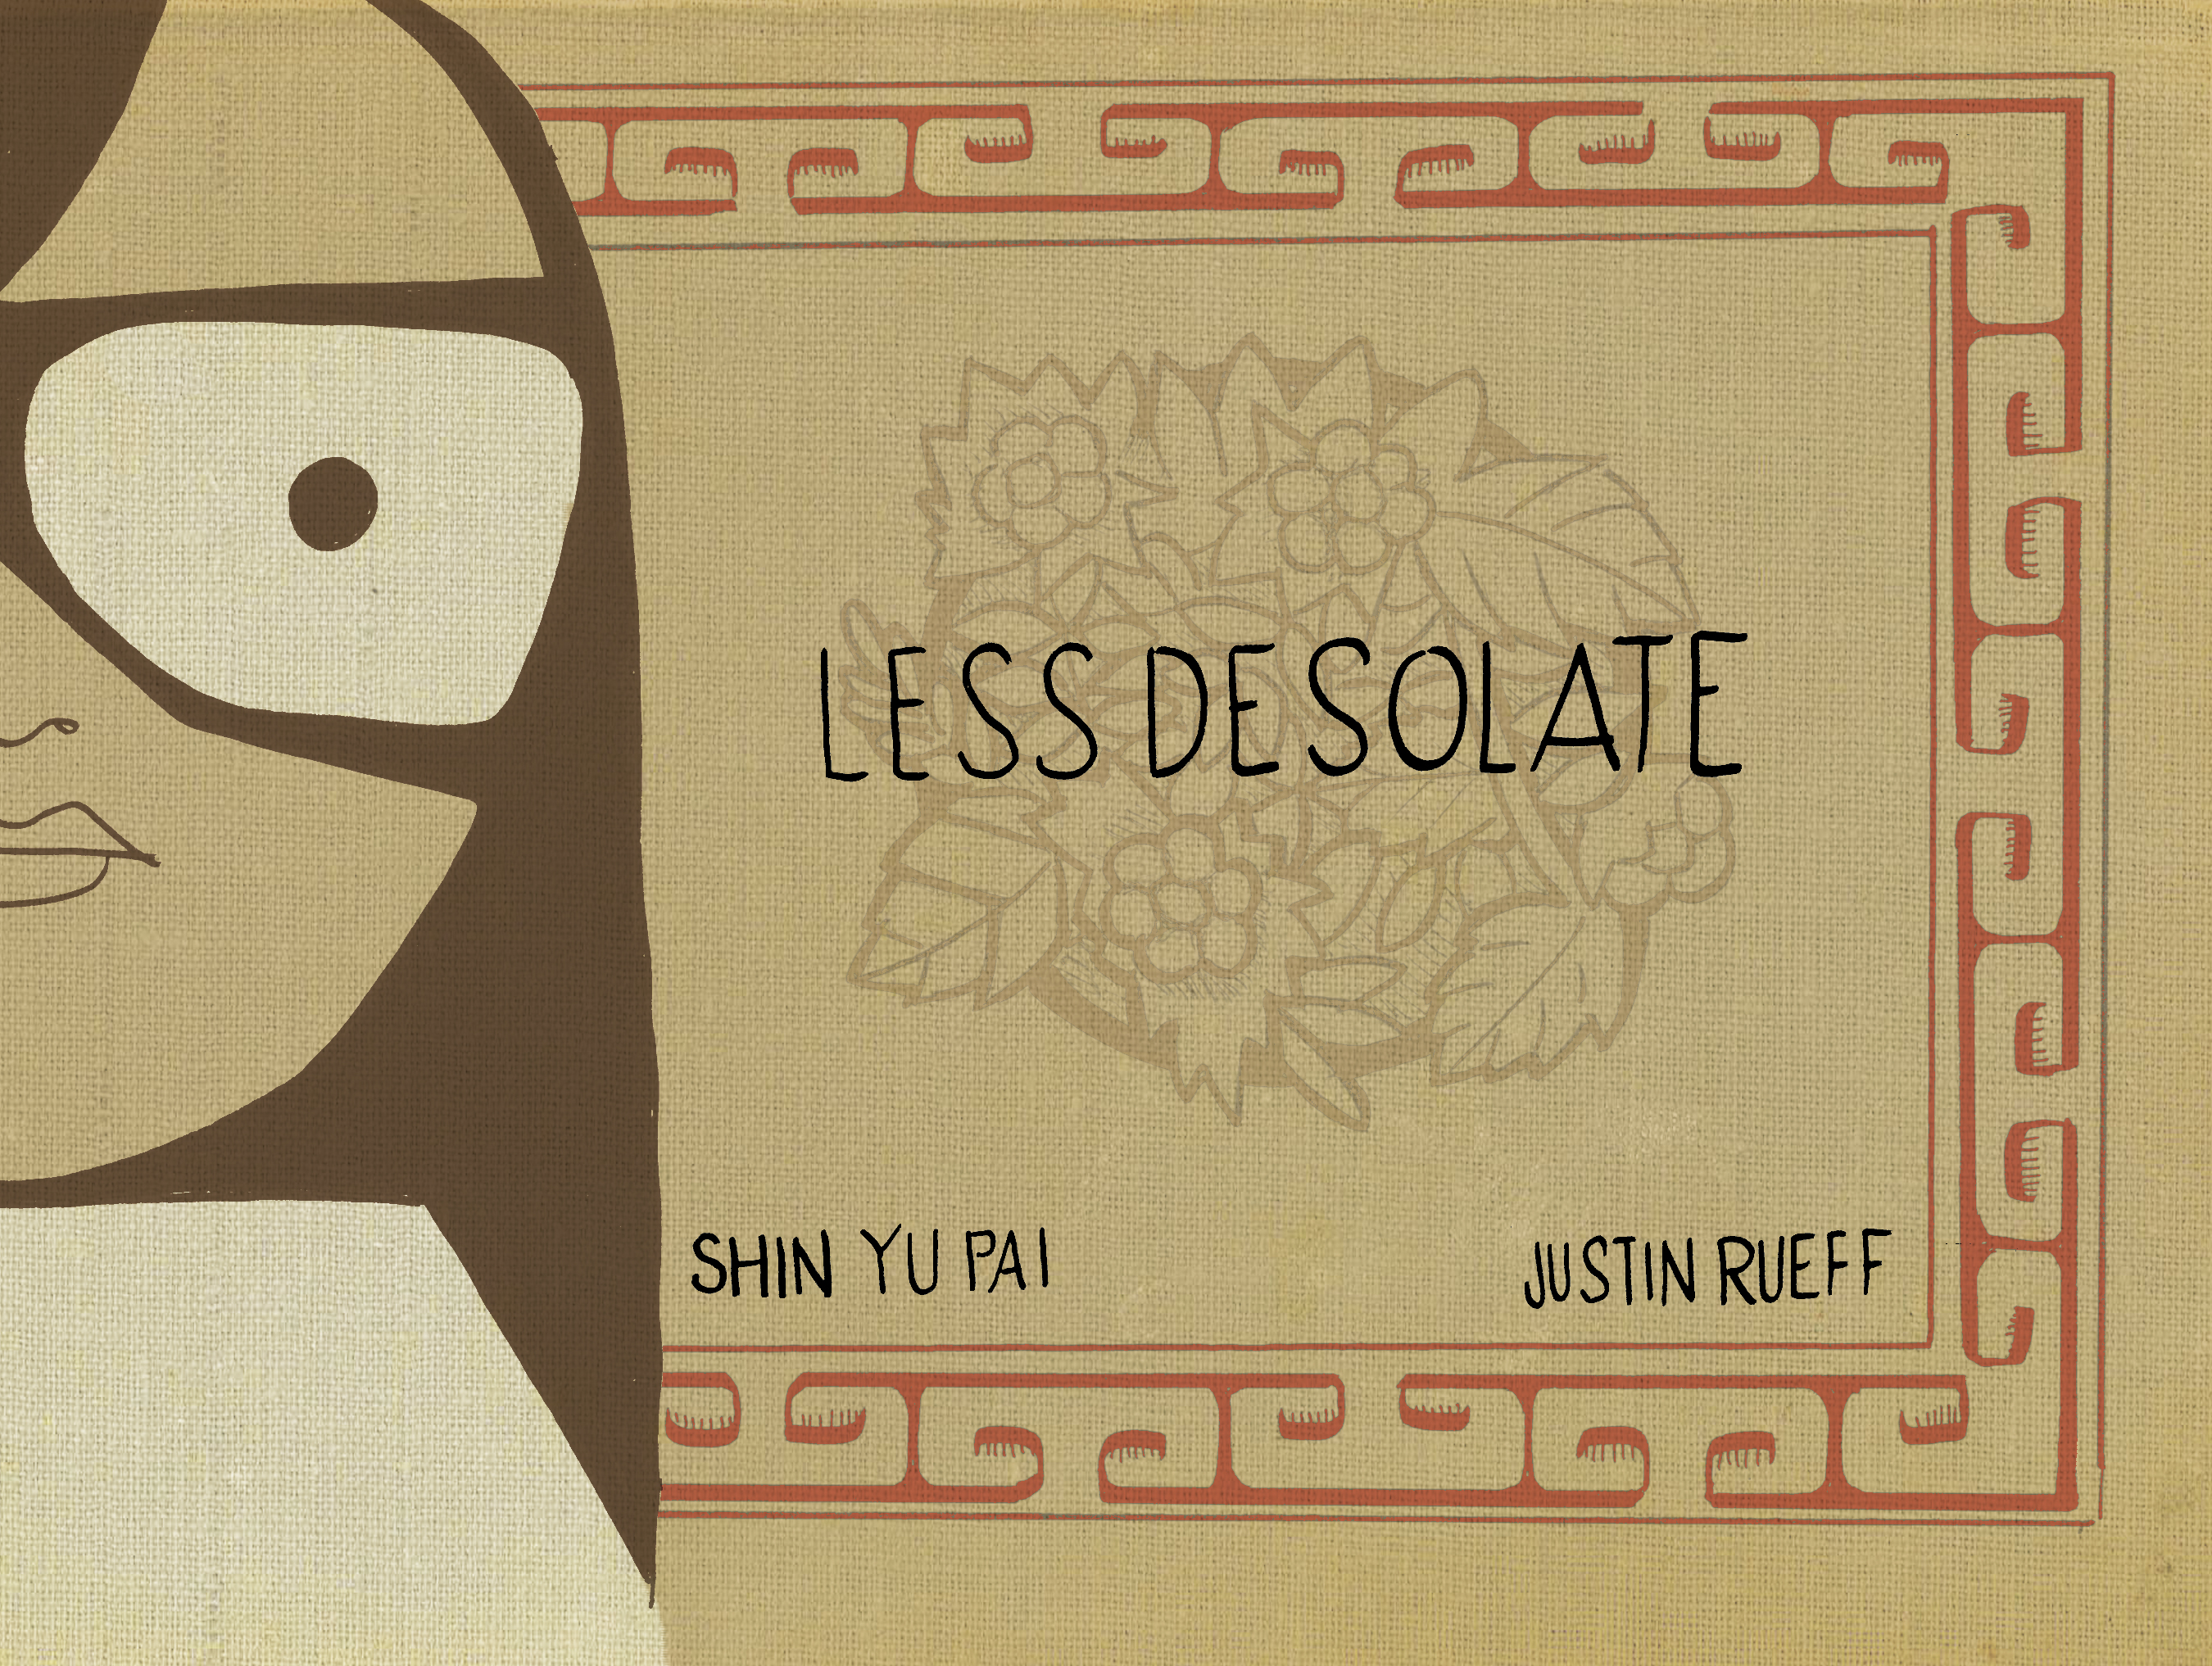 Less Desolate